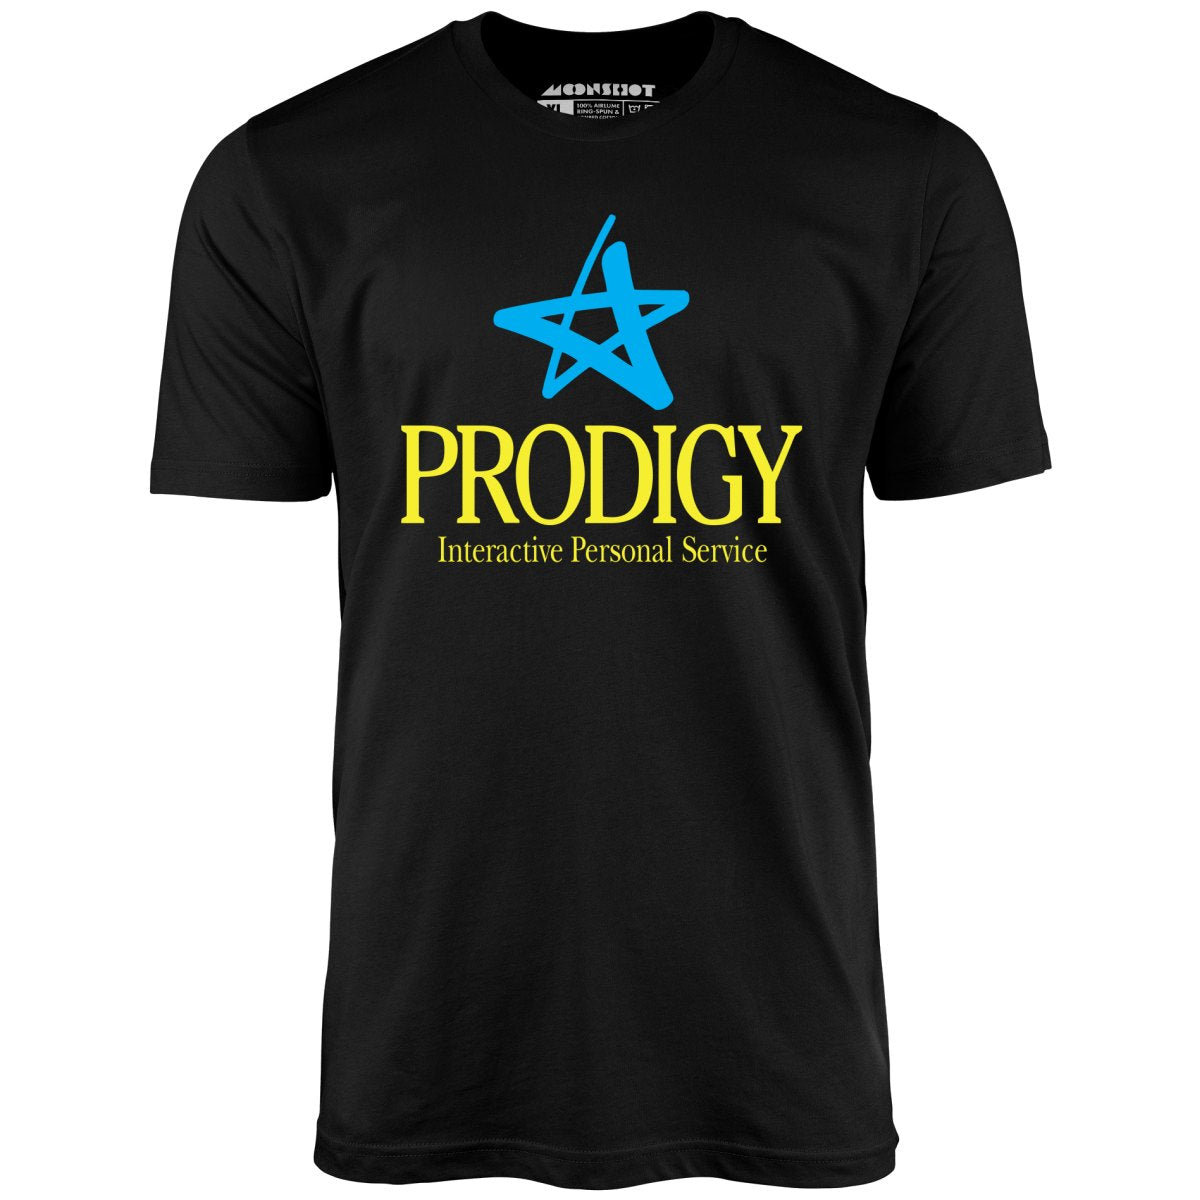 Prodigy - Vintage Internet - Unisex T-Shirt